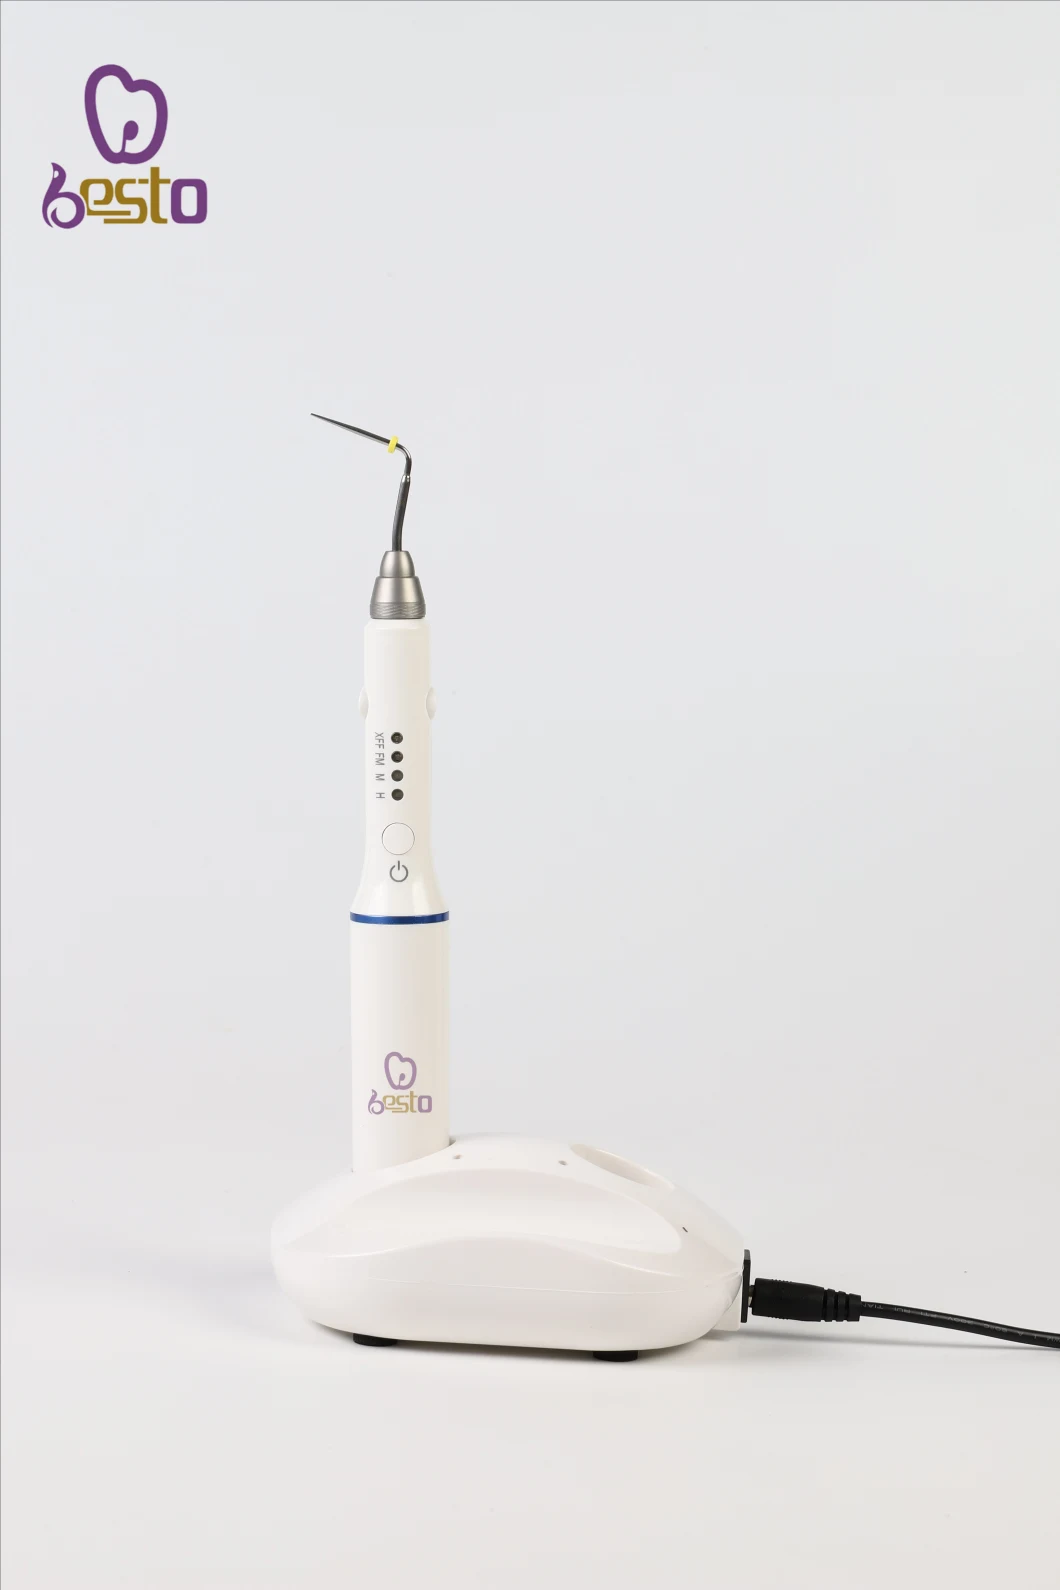 Hot Melt Filling System Dental Materials Endodontic Durable Dental Obturation Gutta Percha Pen